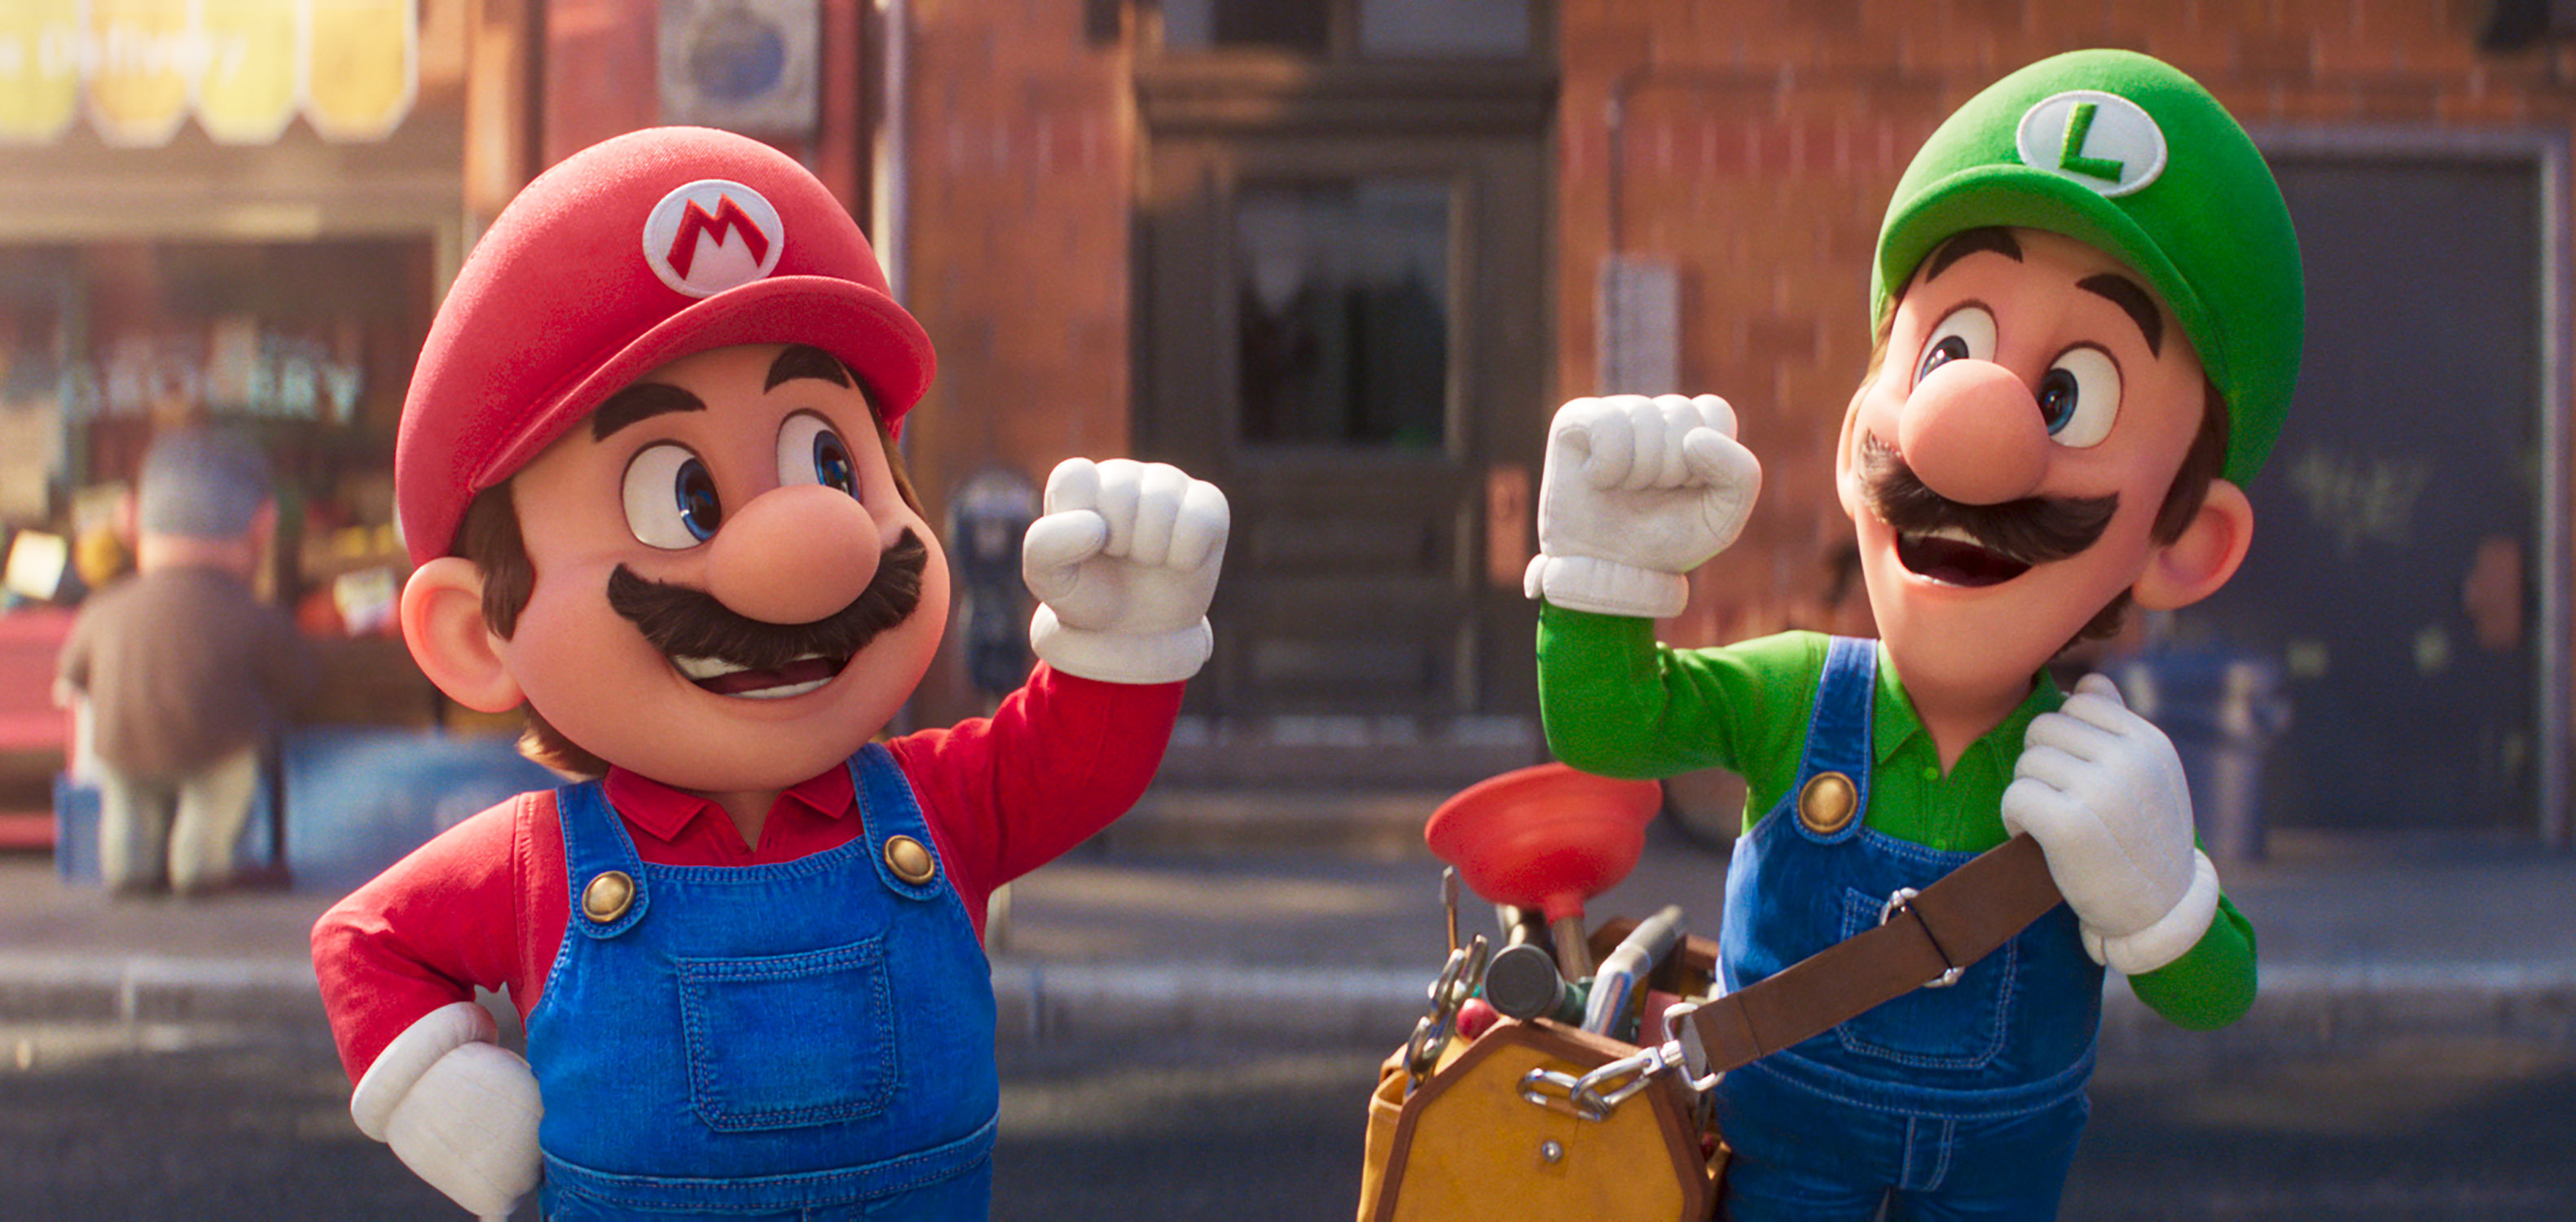 Super Mario Bros: OLX registra aumento de até 200% nas vendas de produtos  temáticos - Mercado&Consumo